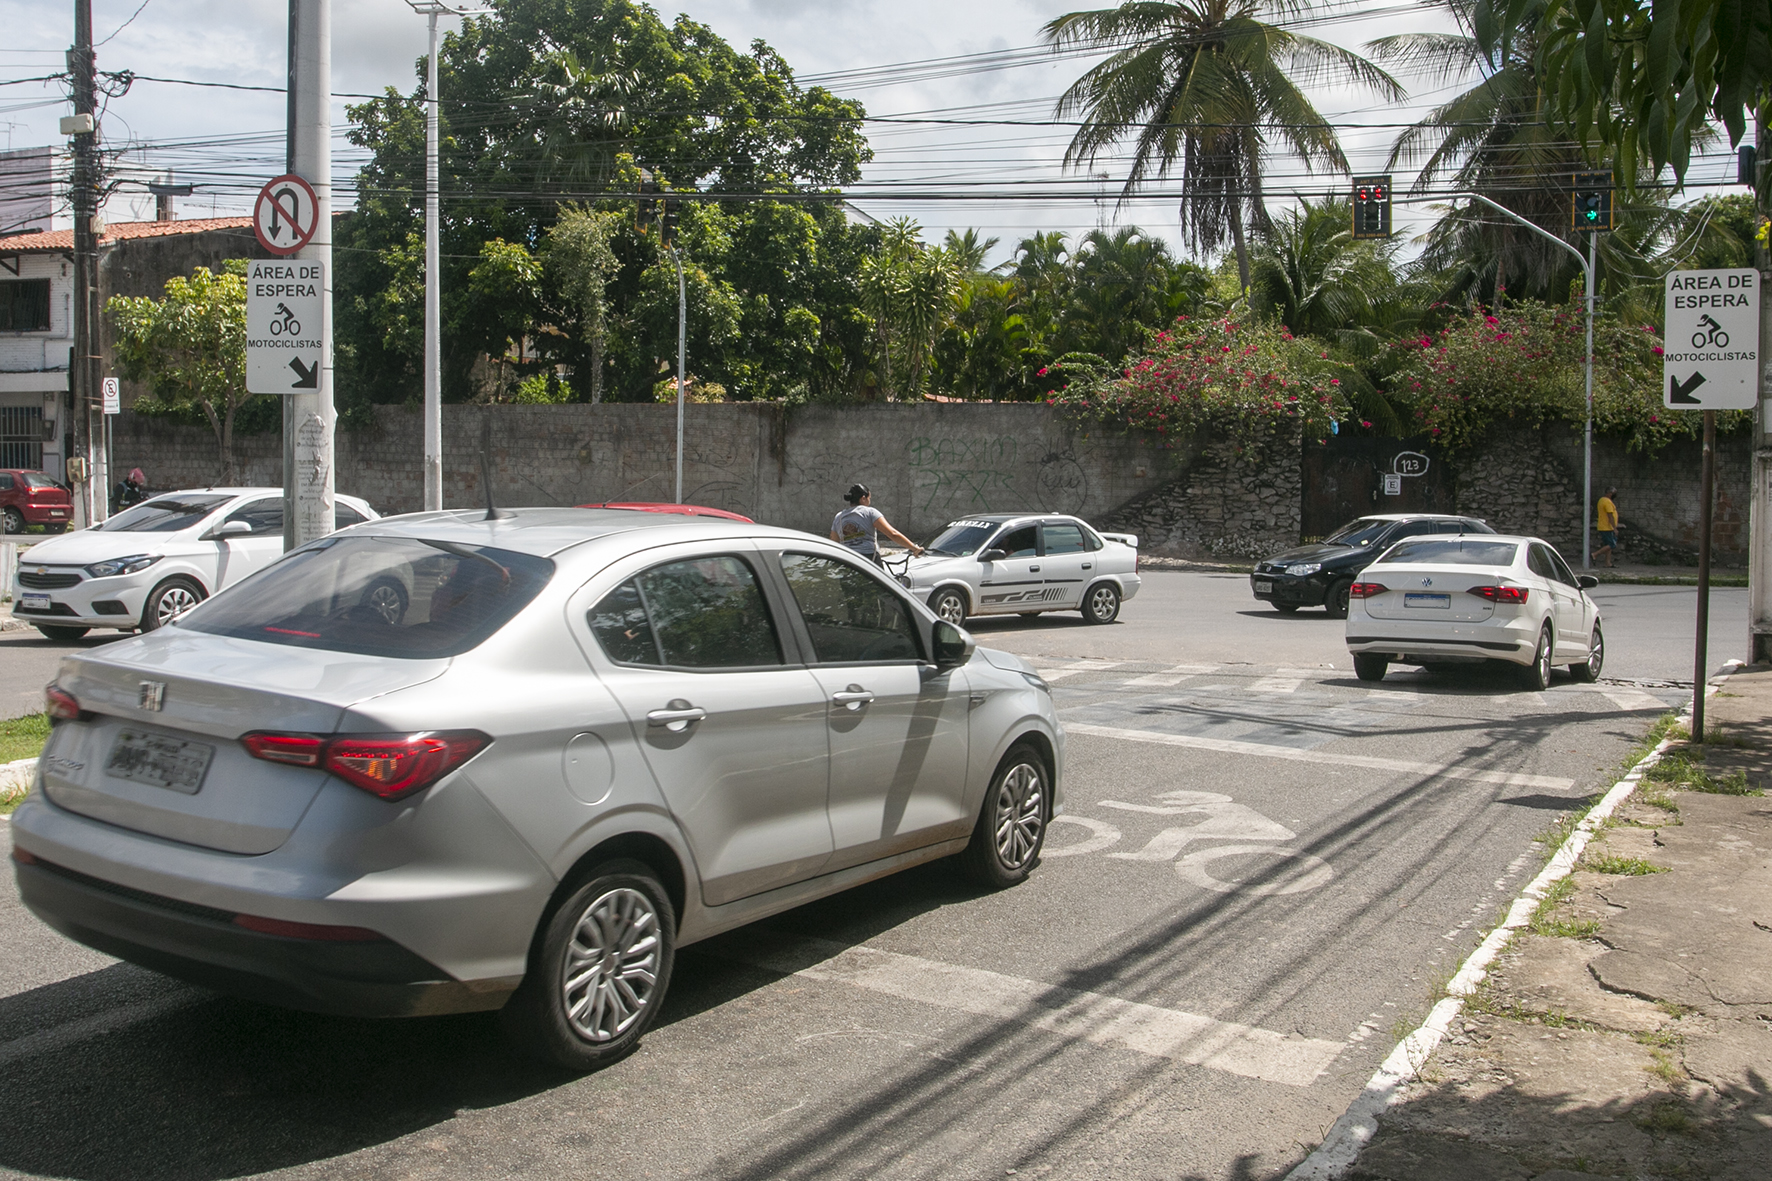 Prefeitura de Eusébio realiza serviço de requalificação no cruzamento das avenidas Cícero Sá e Eduardo Sá, a partir deste sábado